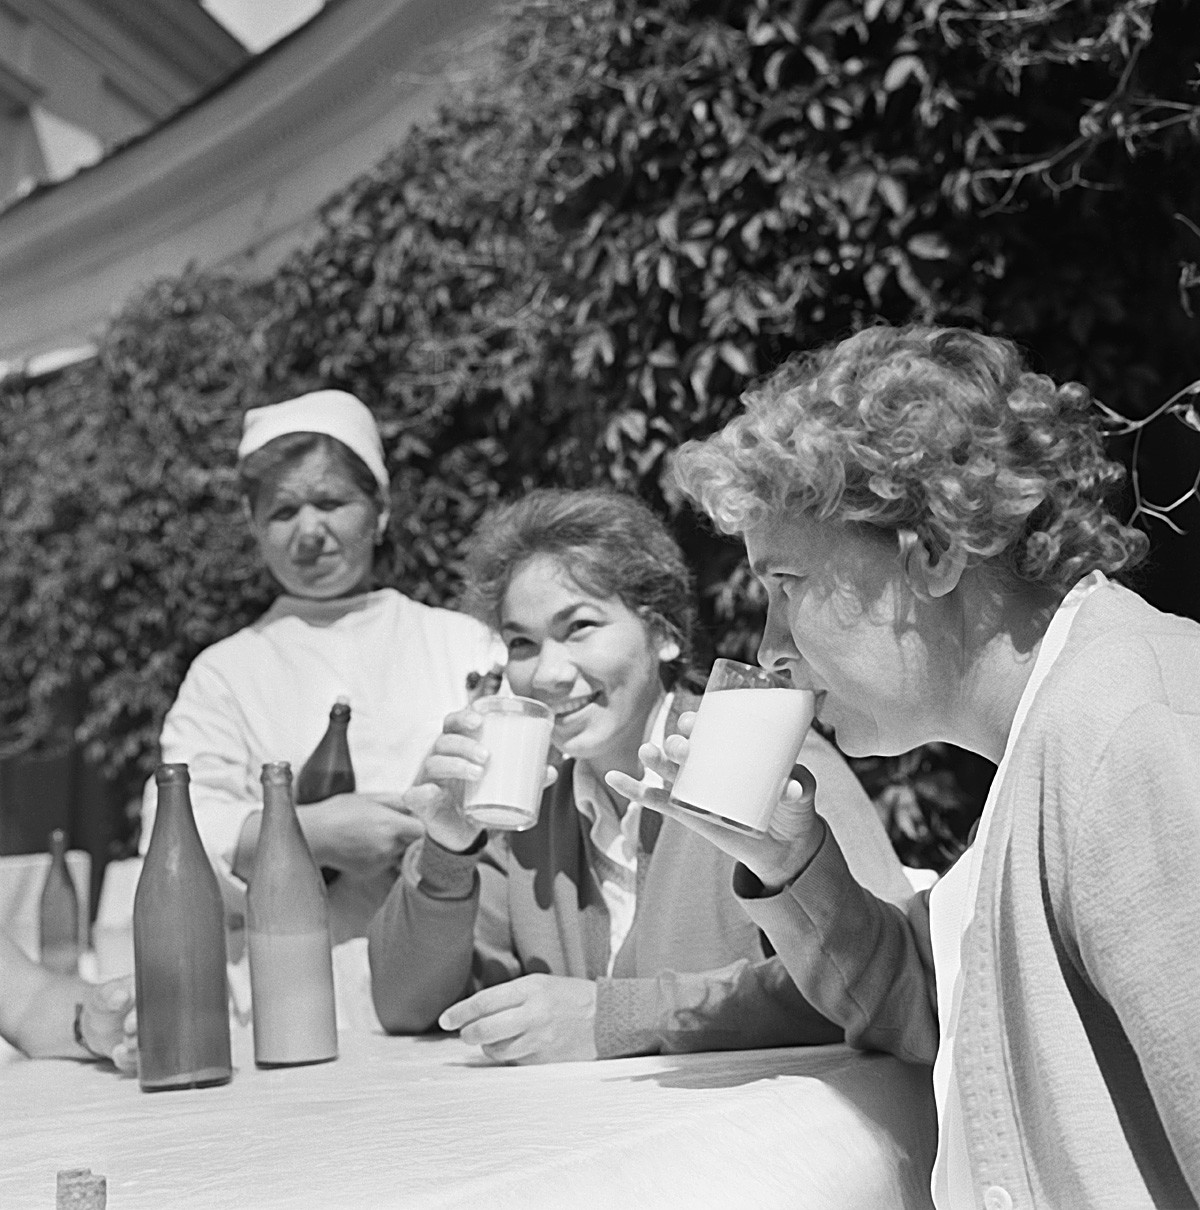 Московска област. СССР. Юни 1964 г. Пациентите на профилактичен туберкулозен център пият кумис по време на лечебна процедура. Точният ден на фотографията не е известен.